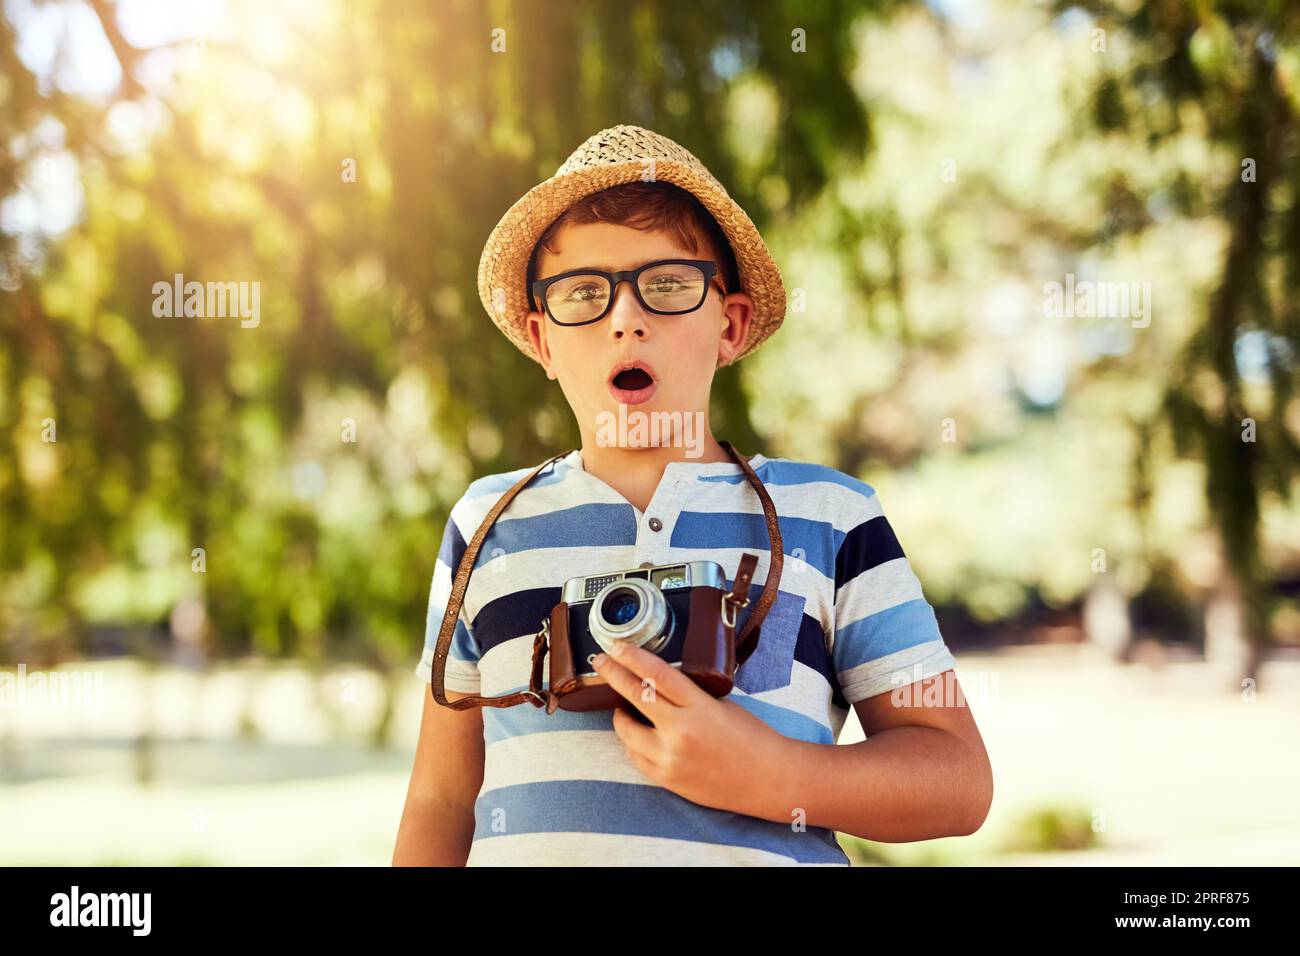 Ive ha ottenuto ottenere una foto di quello. Ritratto di un ragazzino che guarda sorpreso mentre scatta una foto con una macchina fotografica vintage al parco. Foto Stock